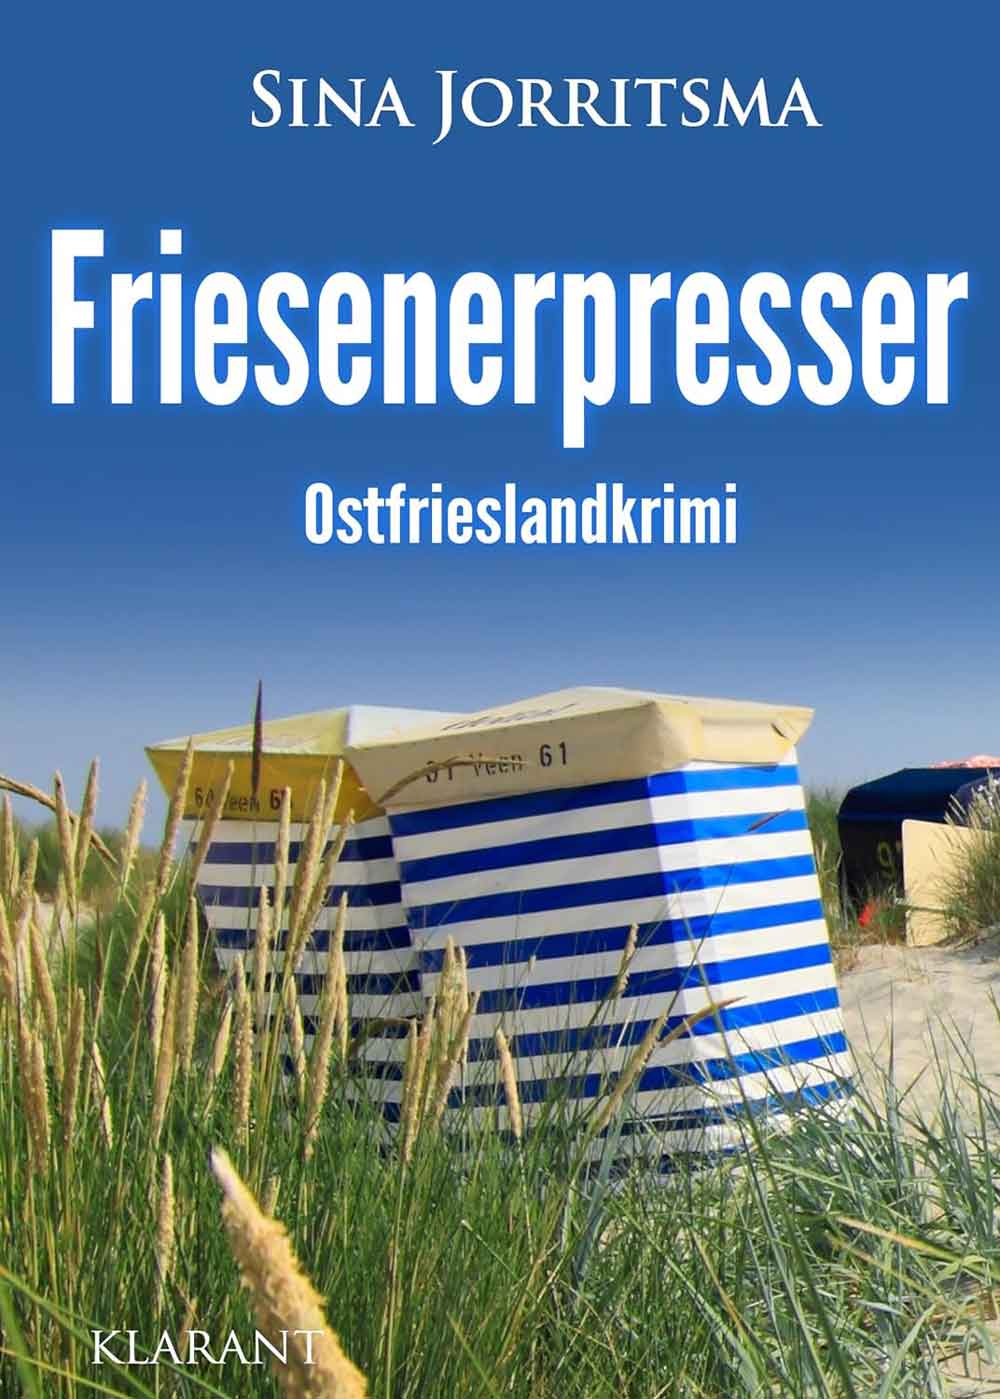 Lesetipps für Gütersloh: Neuerscheinung Ostfrieslandkrimi »Friesenerpresser« von Sina Jorritsma im Klarant Verlag